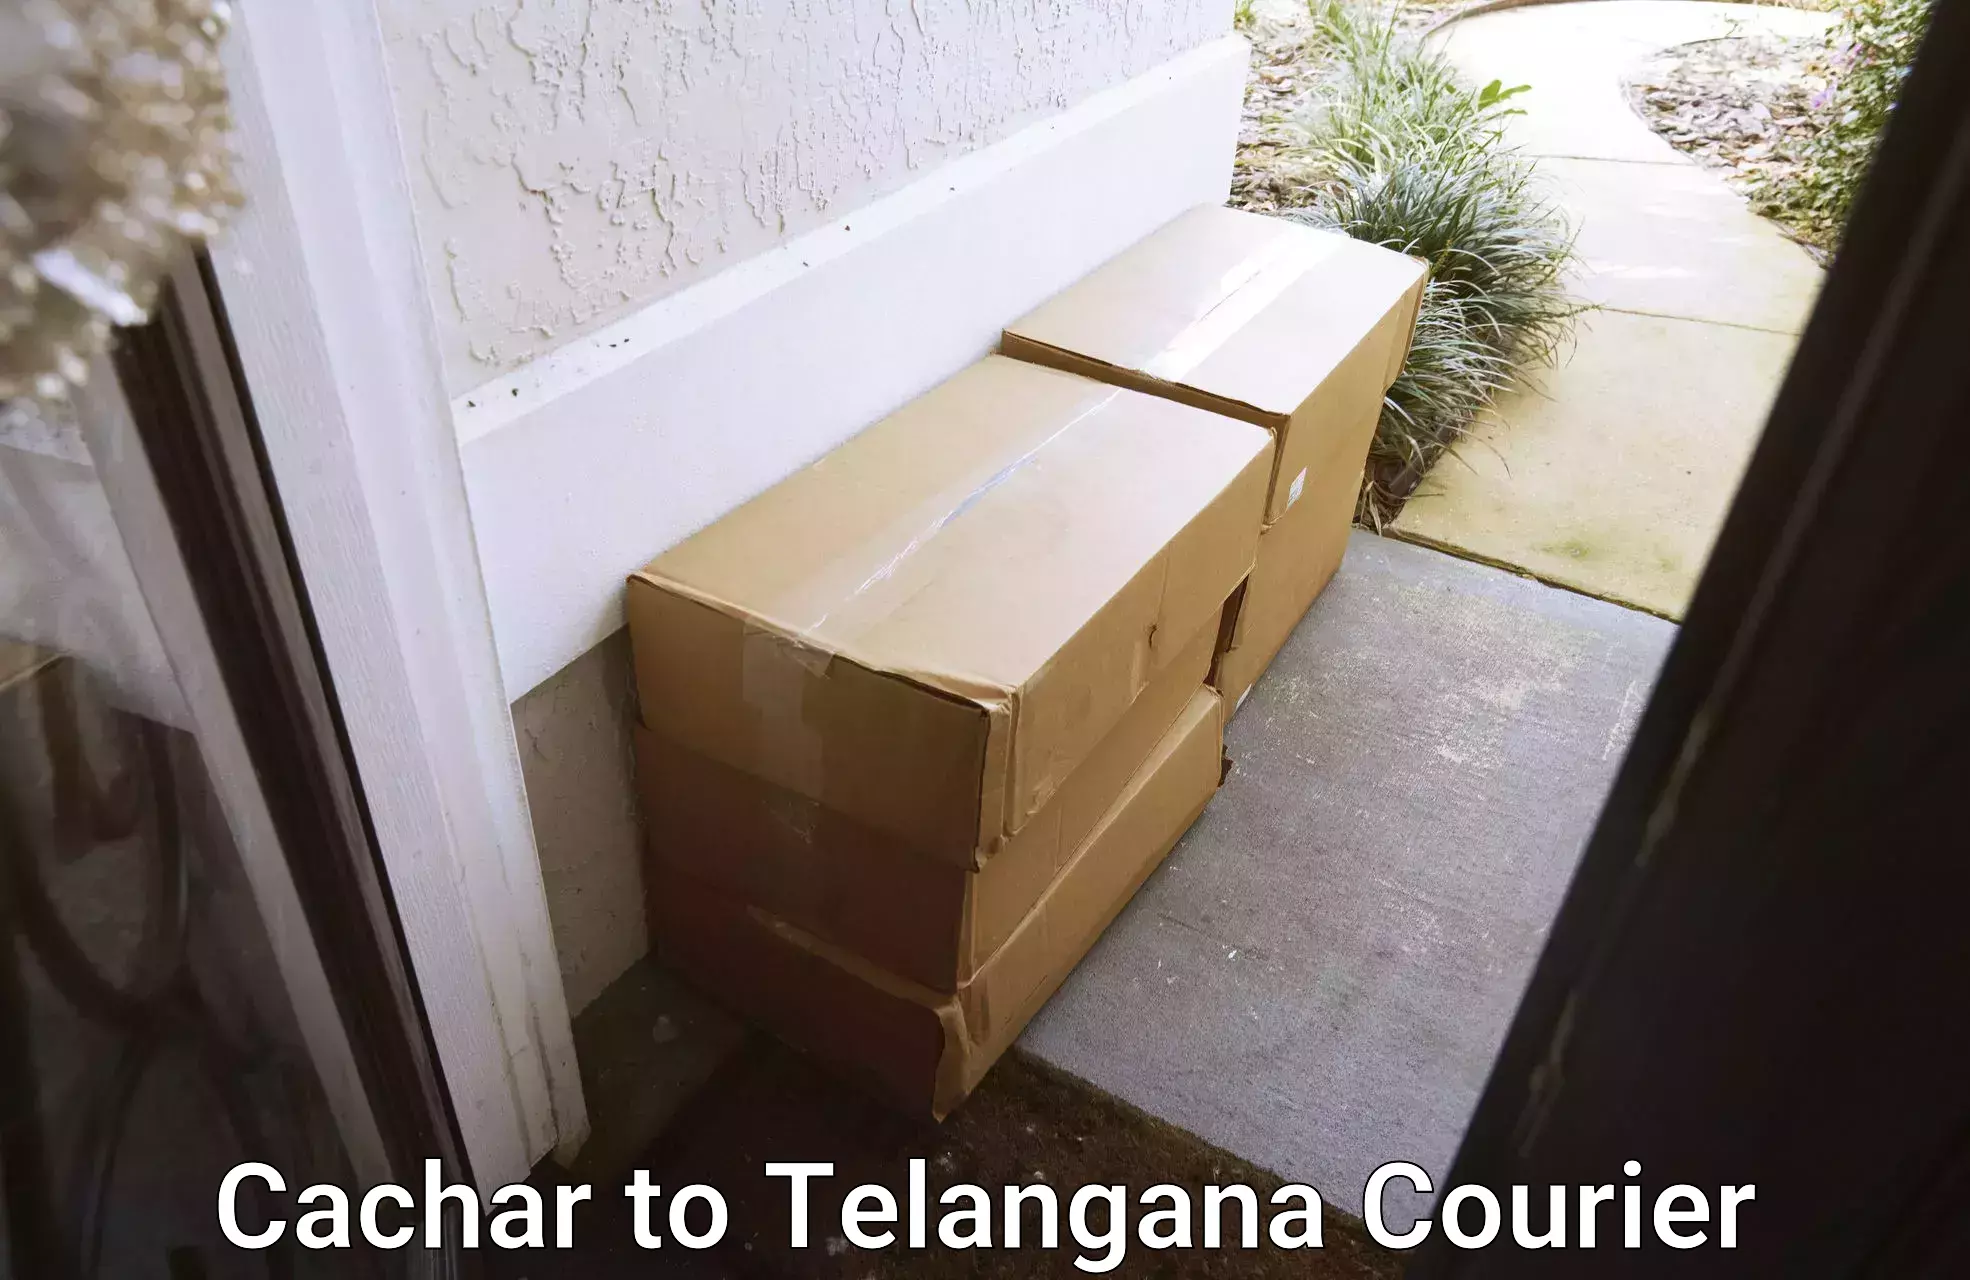 24/7 courier service Cachar to Balanagar